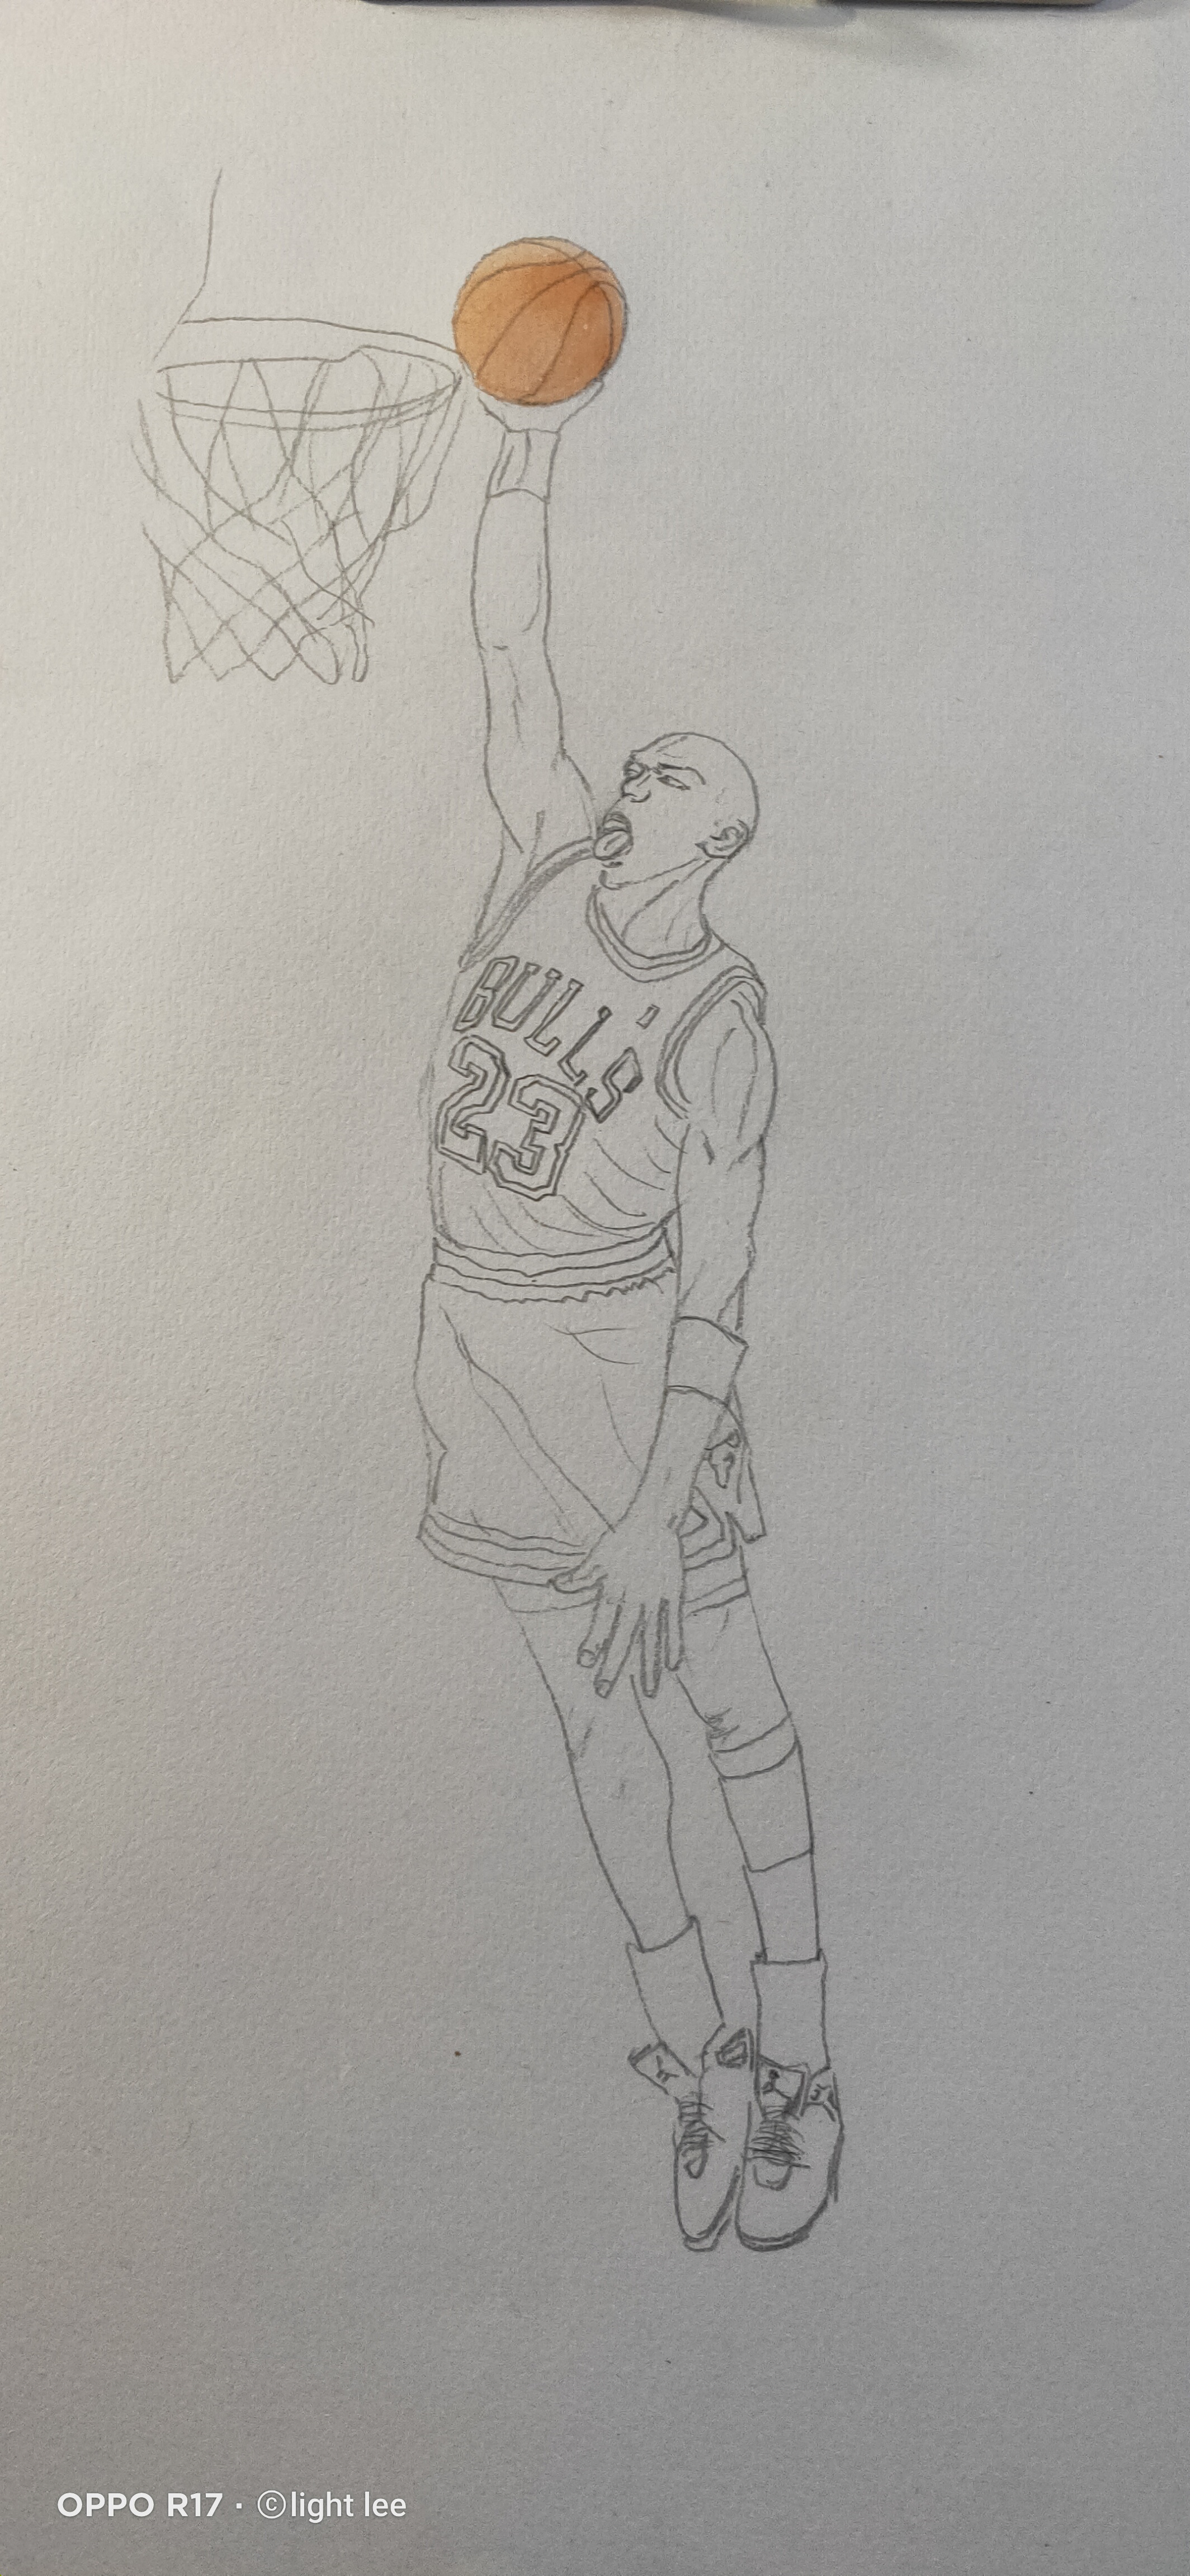 篮球巨星简笔画图片